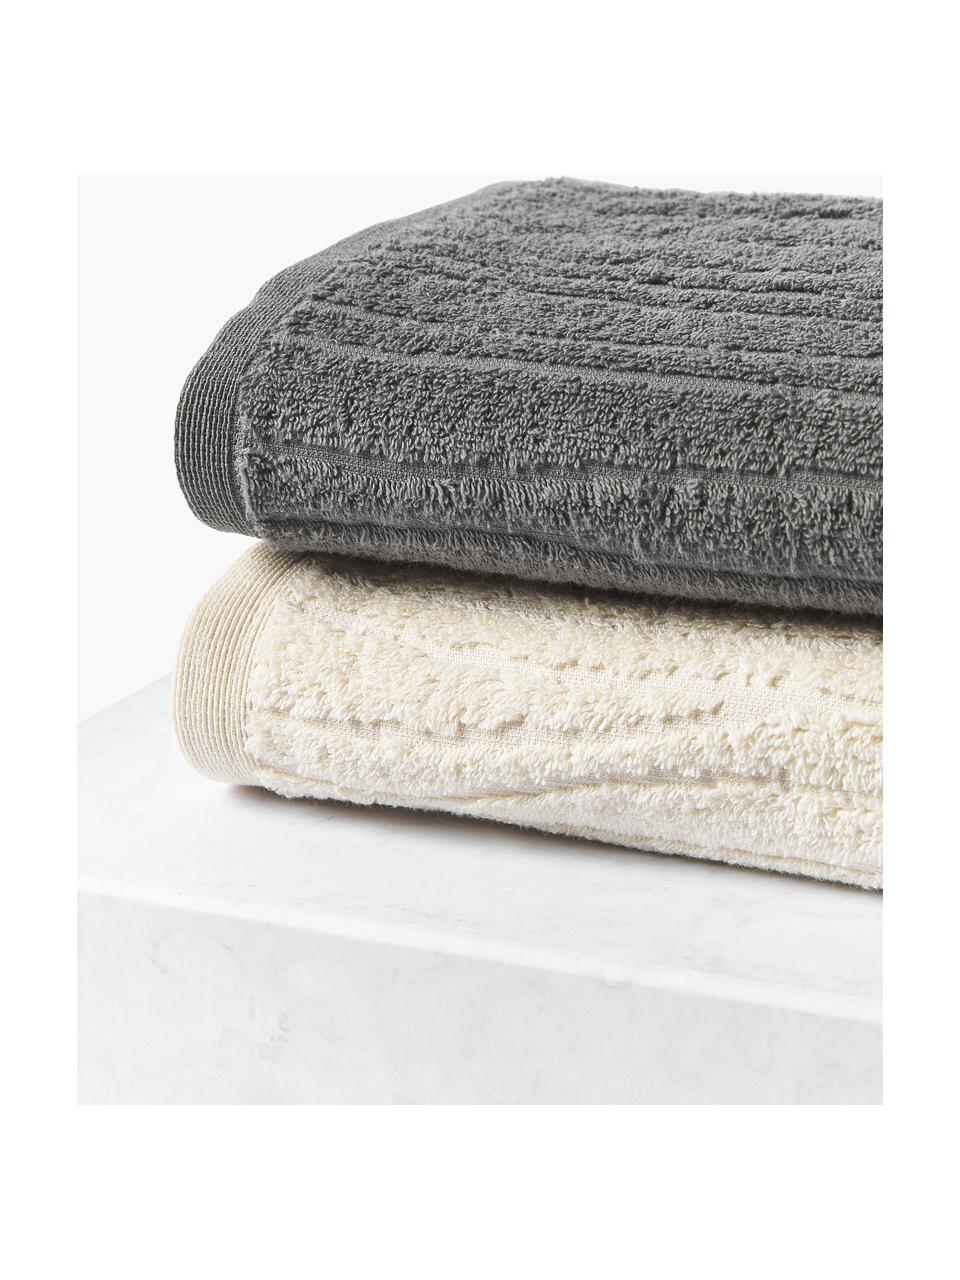 Set de toallas Audrina, tamaños diferentes, Gris oscuro, Set de 3 (toalla tocador, toalla lavabo y toalla de ducha)